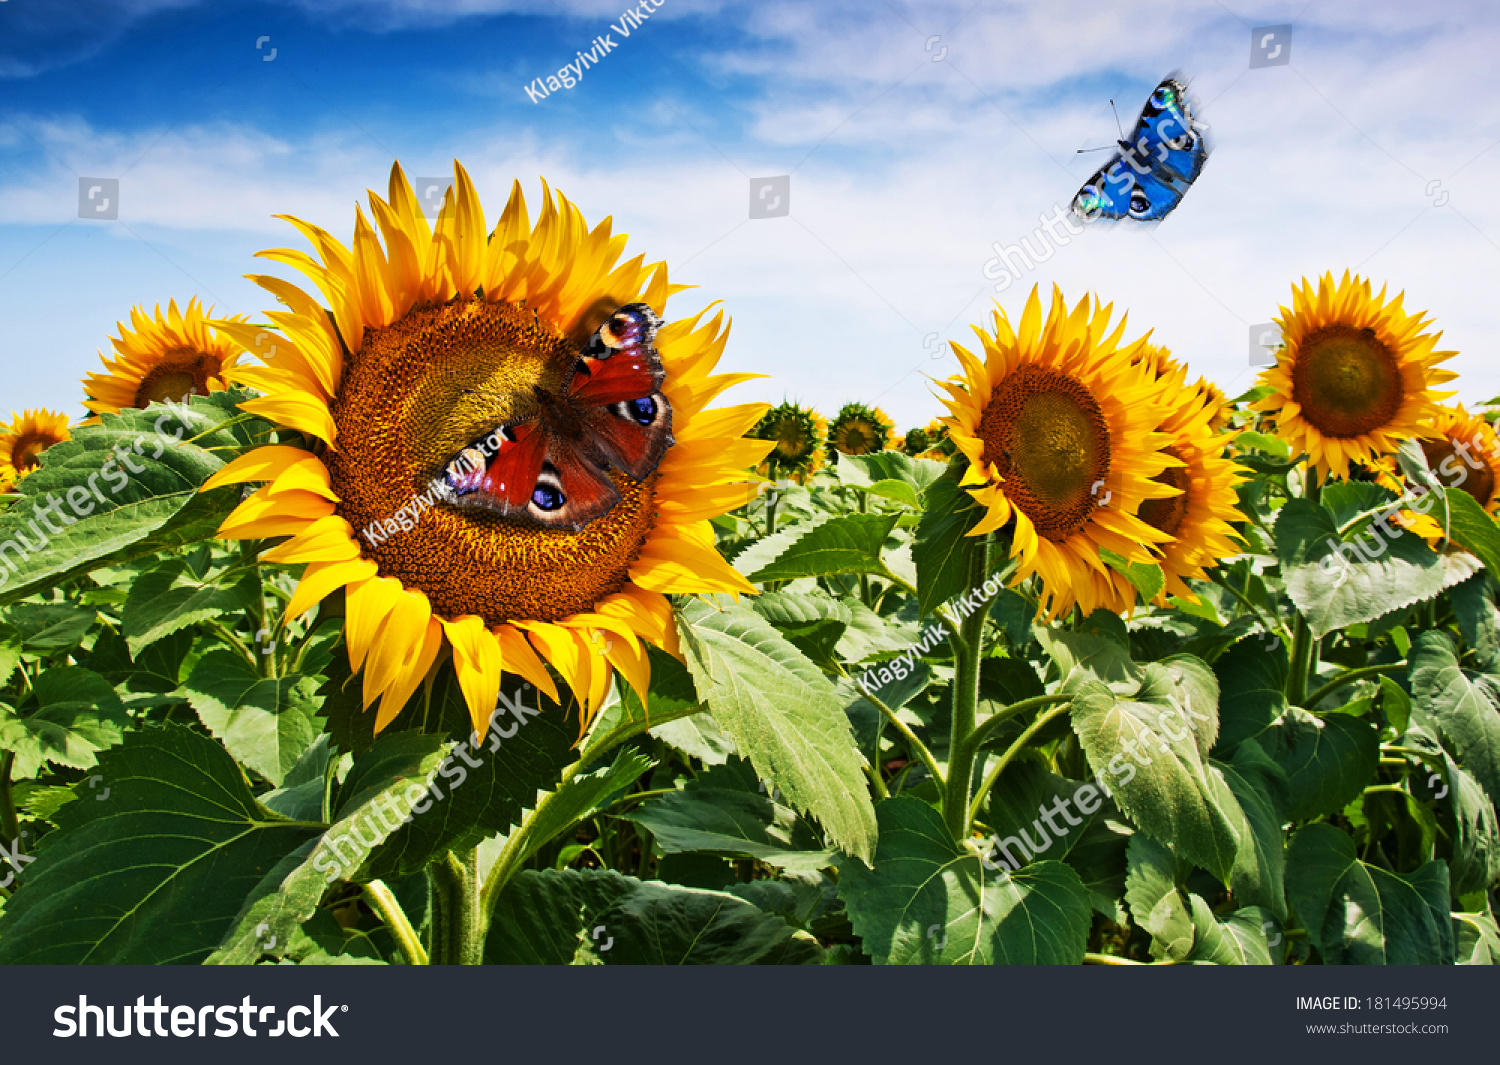 Sunflower Butterflies Background Stock Photo 181495994 - Shutterstock